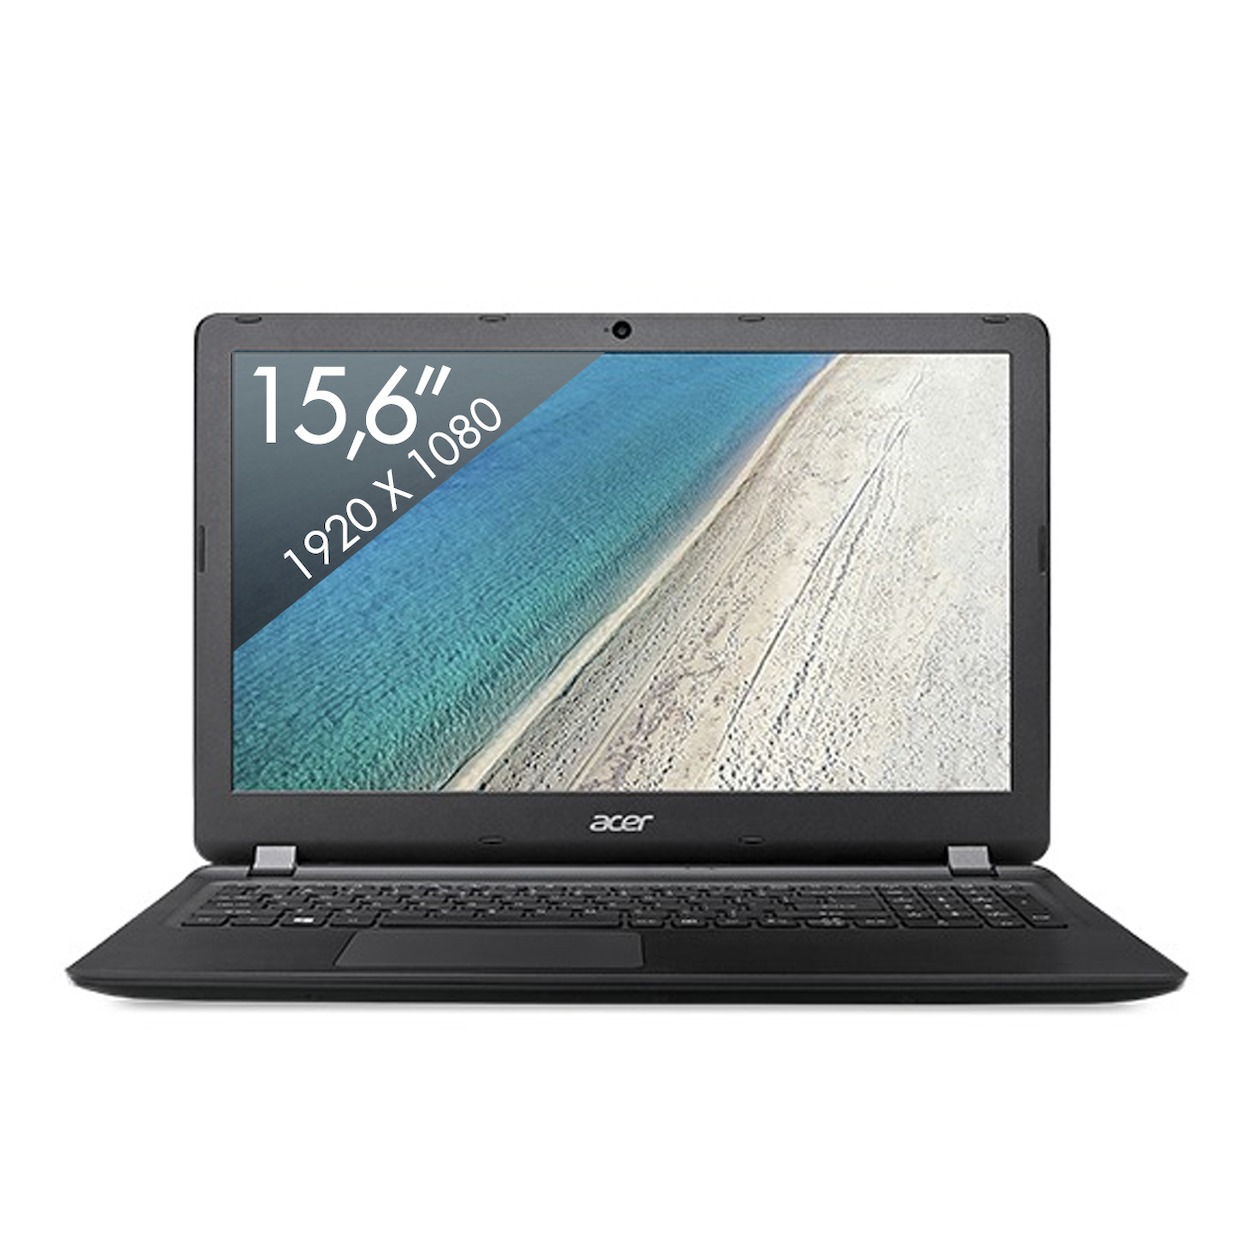 Acer Extensa 15 EX2540-51G9 zwart